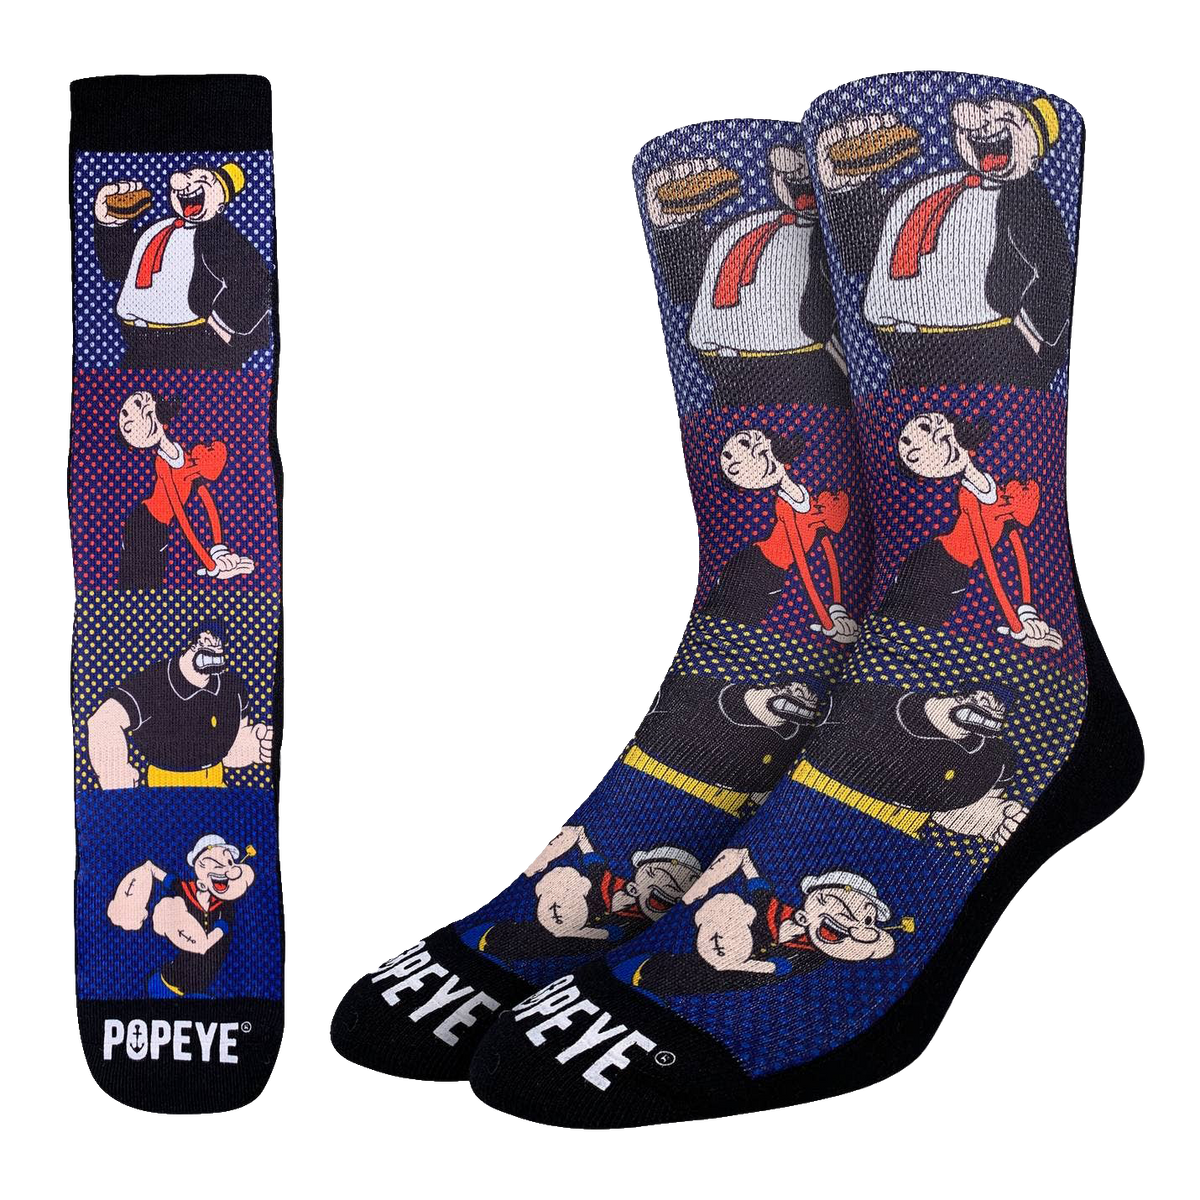 Popeye Comic Books Characters Socks